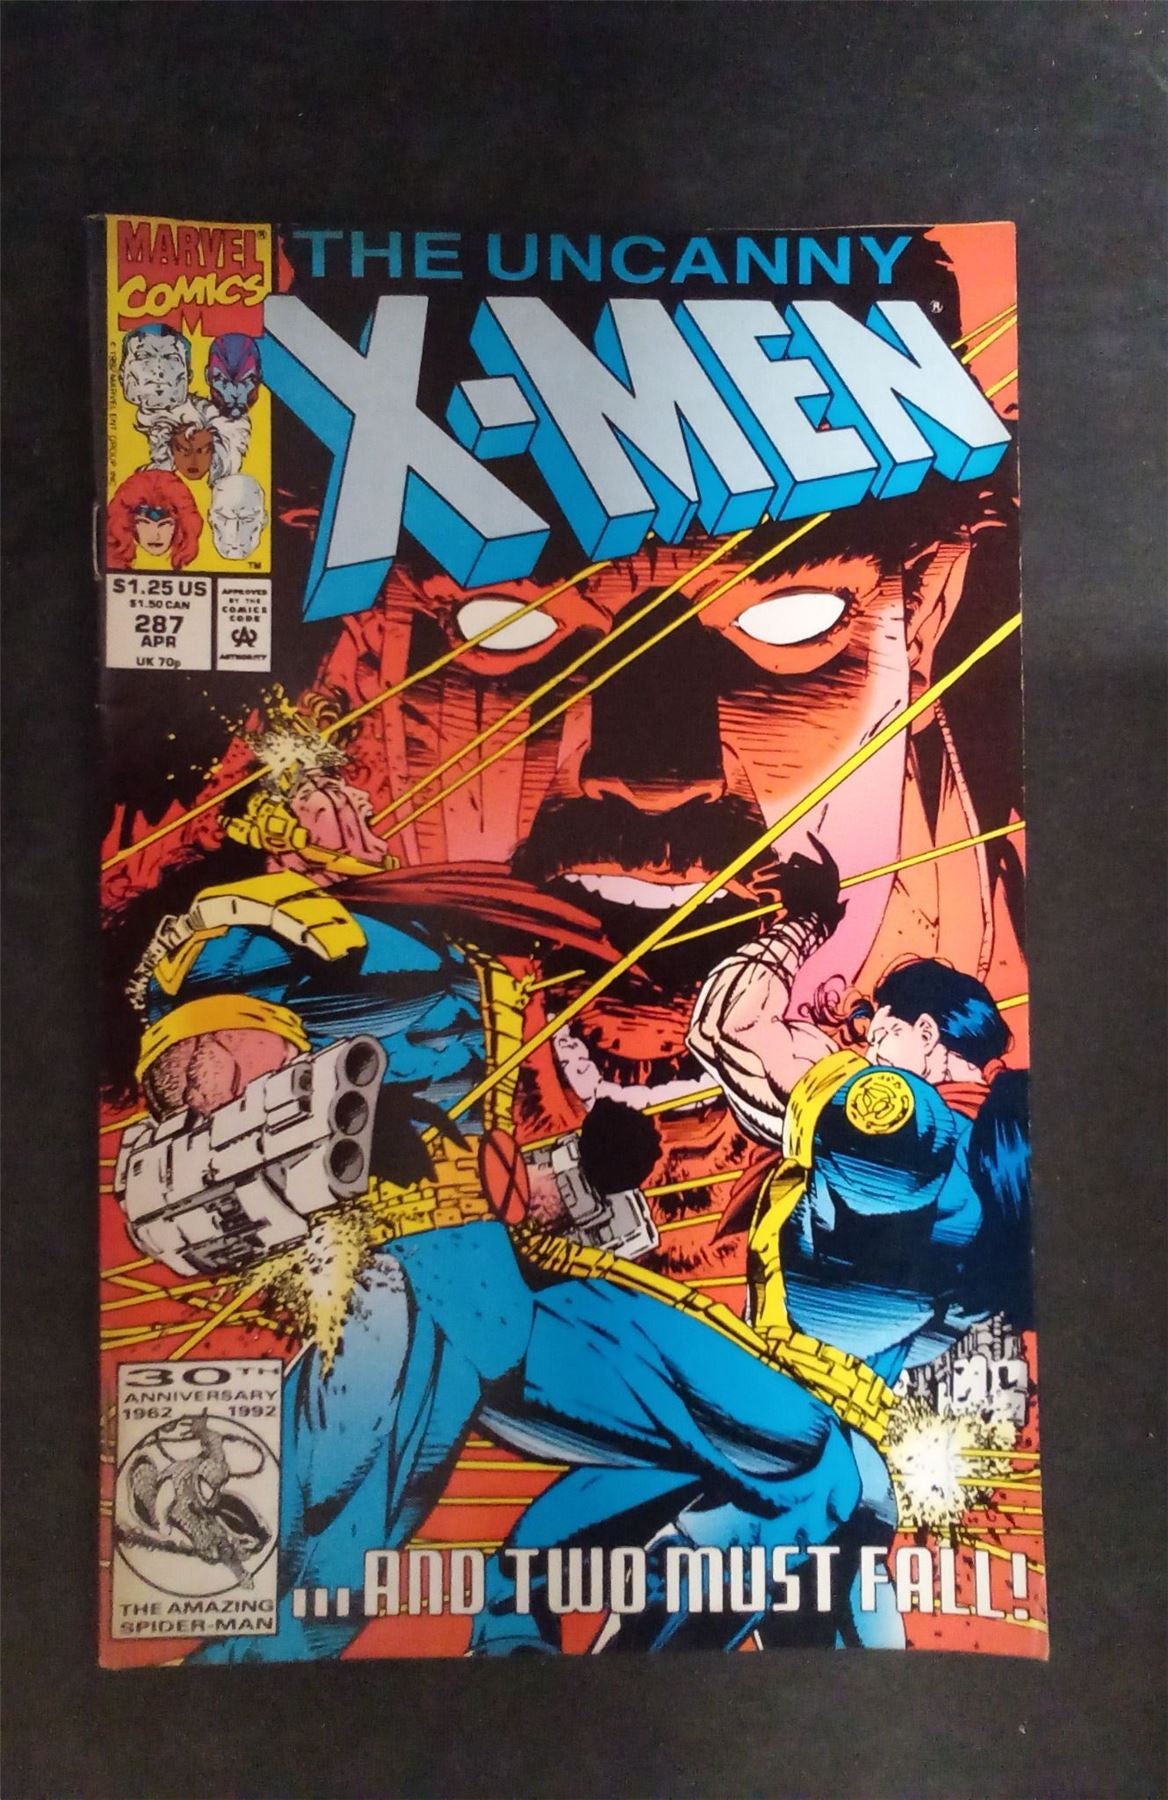 The Uncanny X-Men #287 1992 Marvel Comics Comic Book